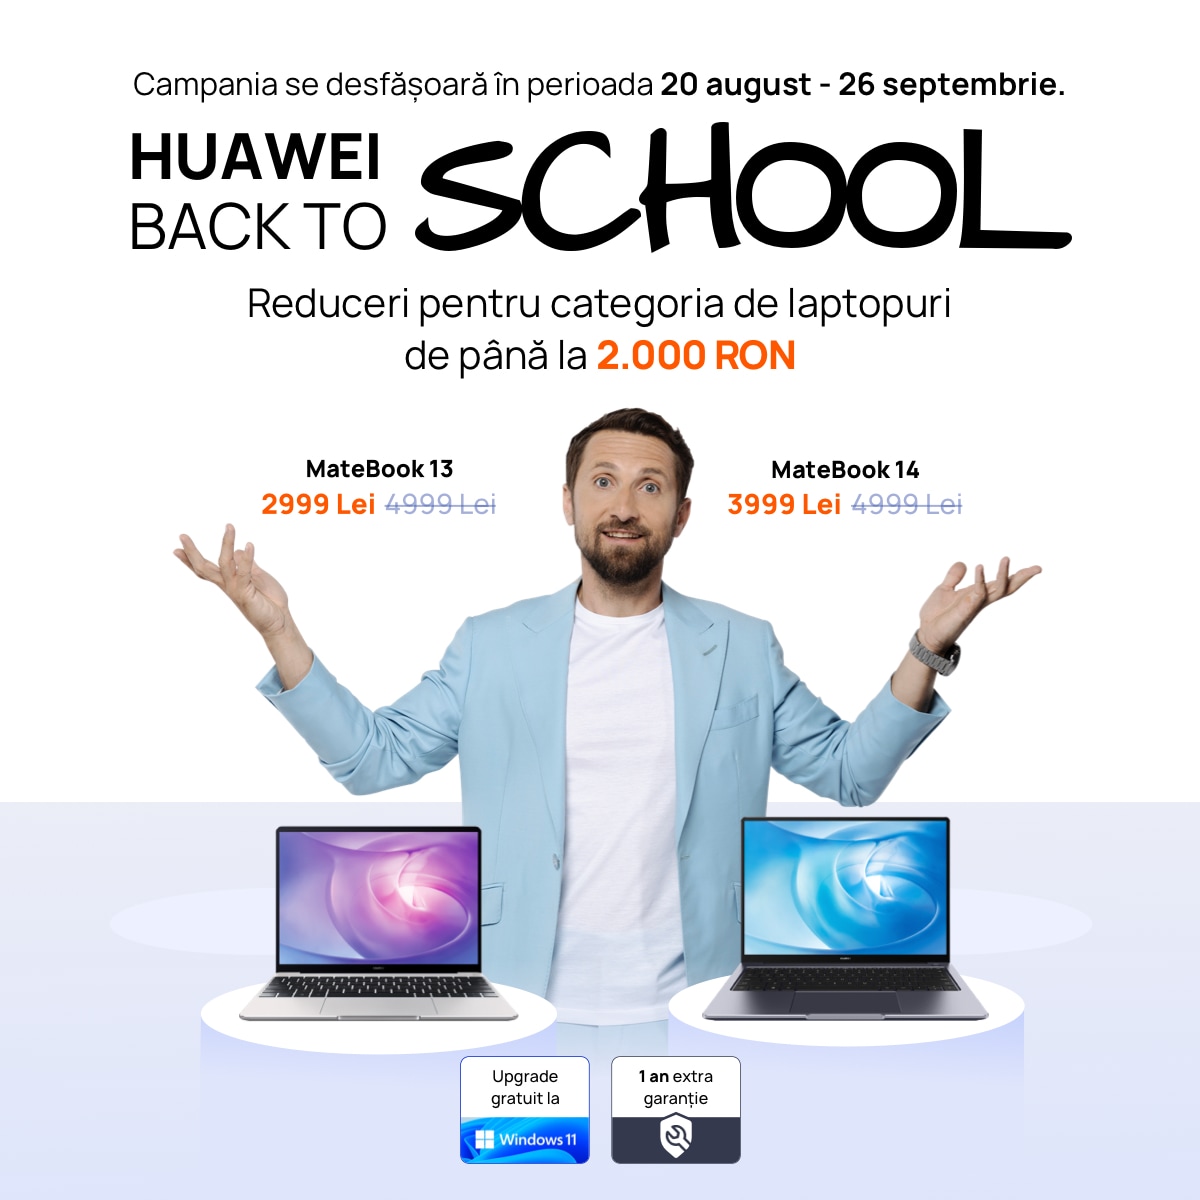 Huawei Back To School (2)